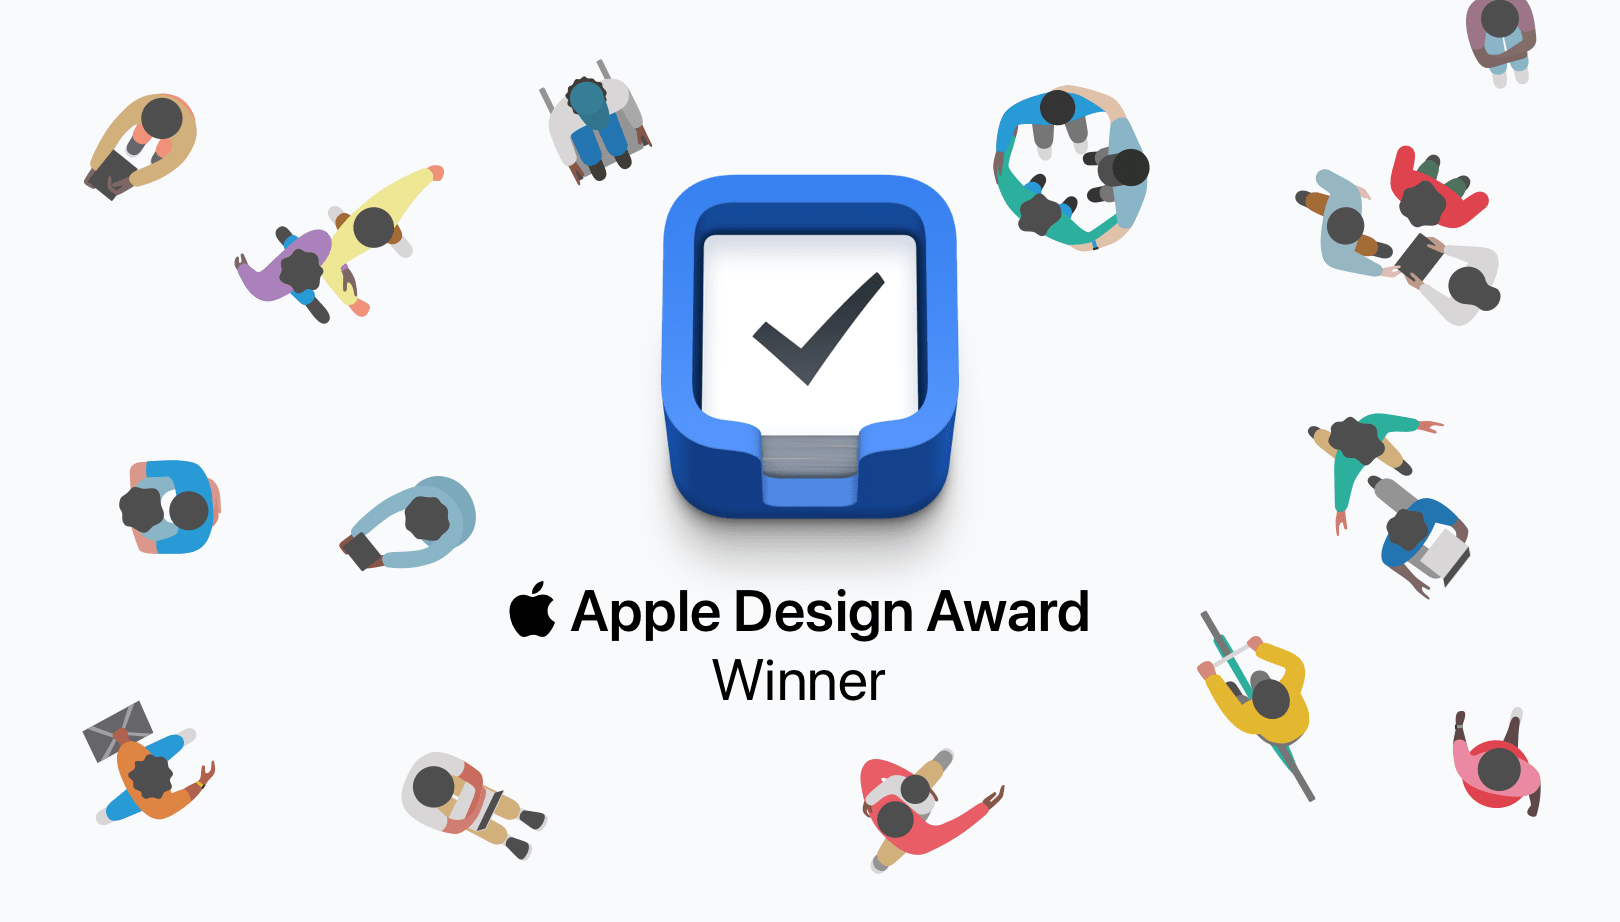 Things - Apple Design Award Winner